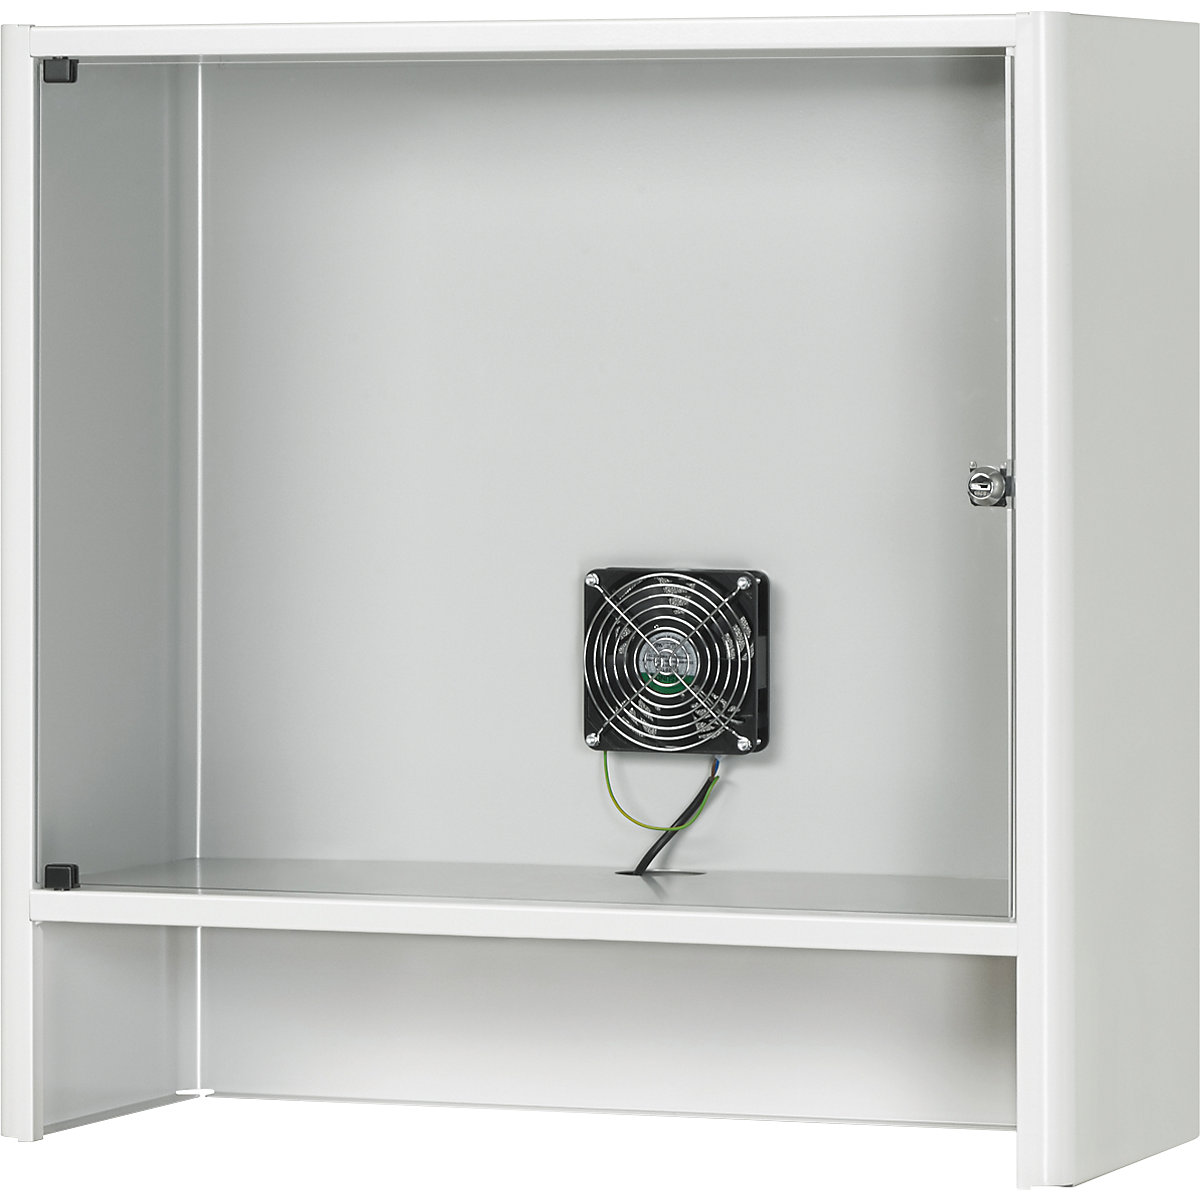 Compartimento para monitor con ventilación activa integrada - RAU